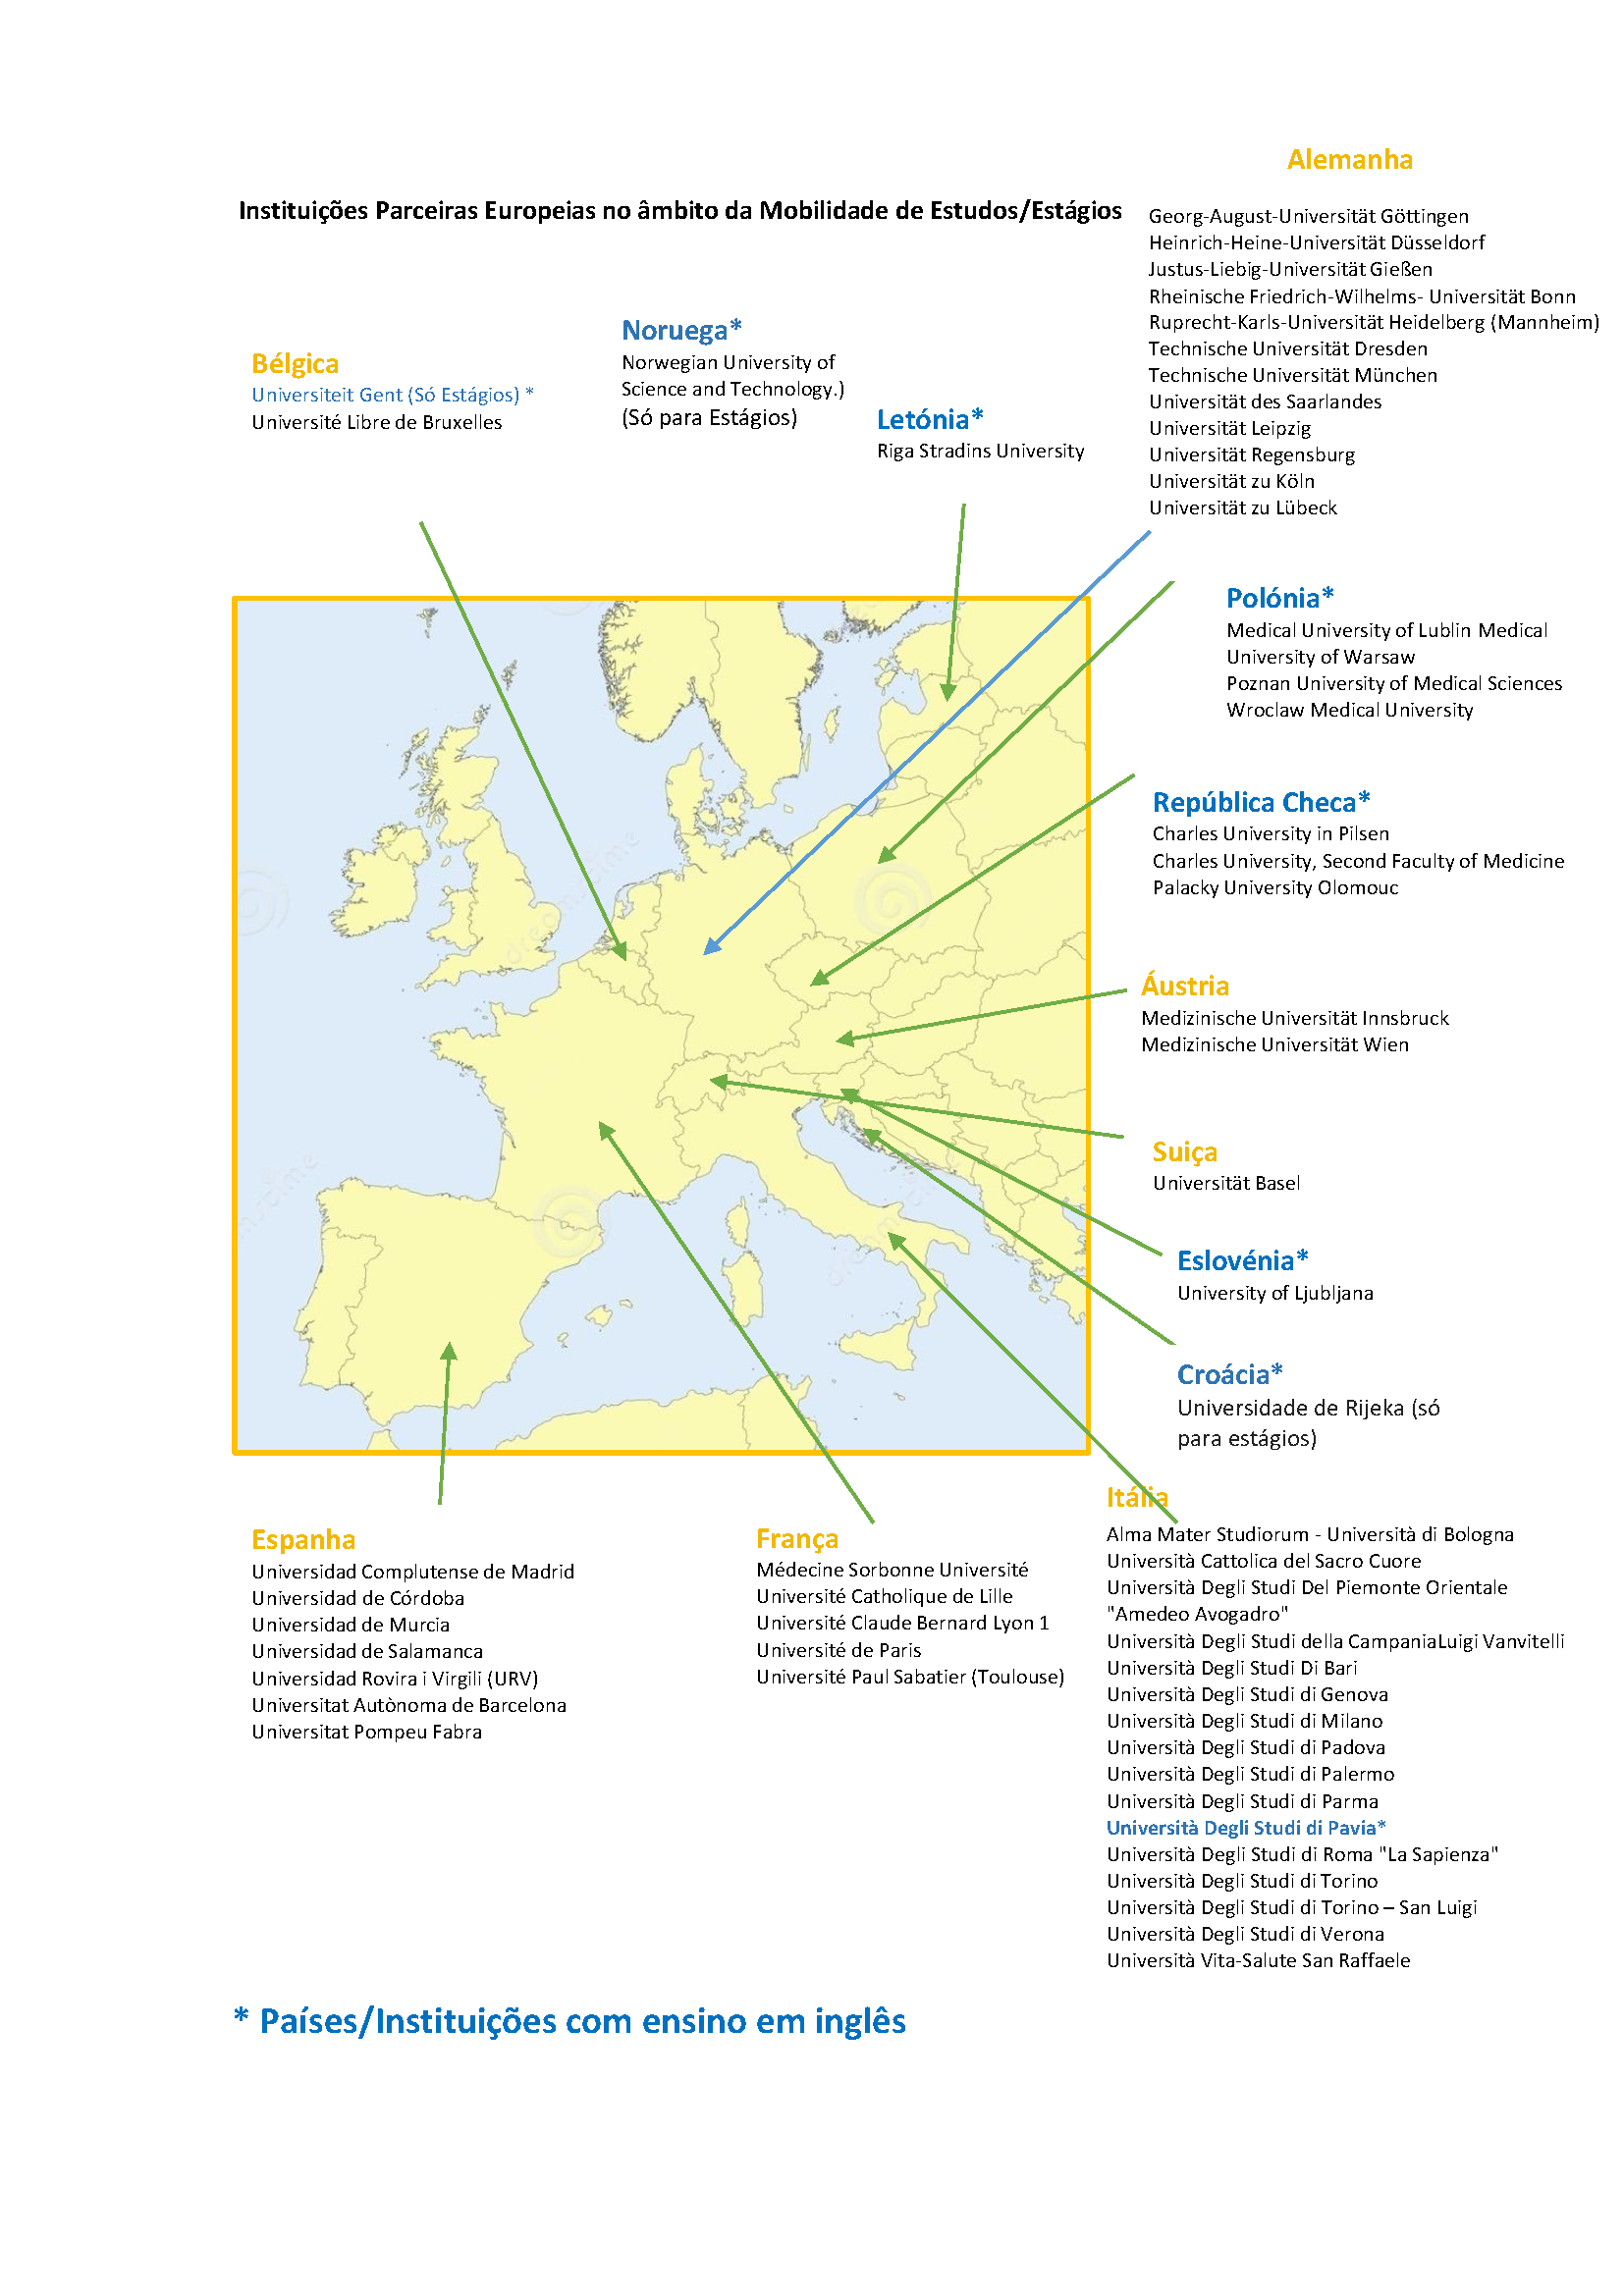 mapa europa com indicação das instituições parceiras com ensino em inglês